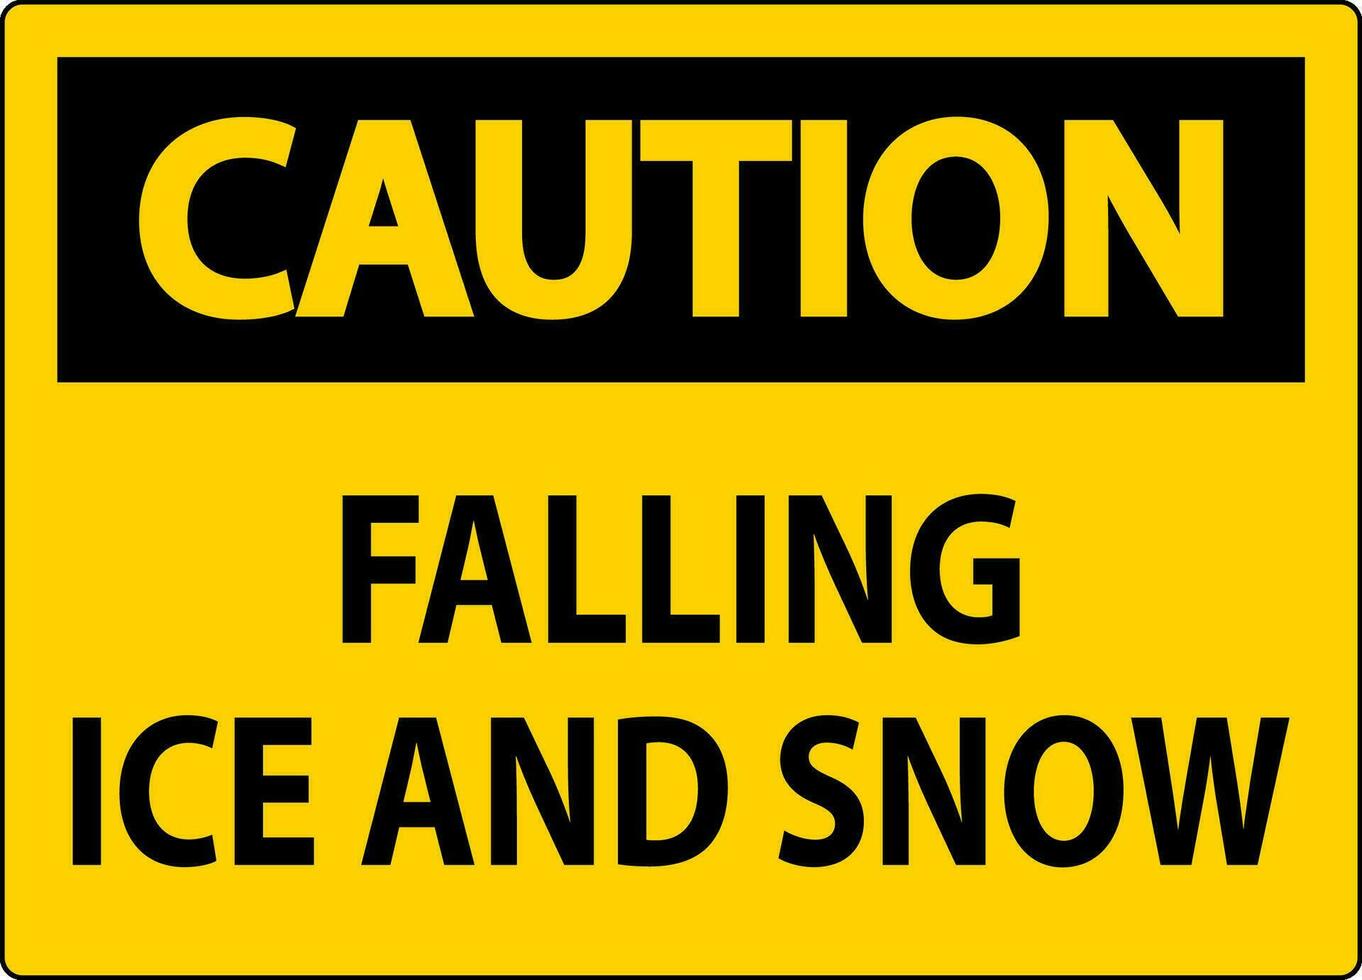 Vorsicht Zeichen fallen Eis und Schnee vektor